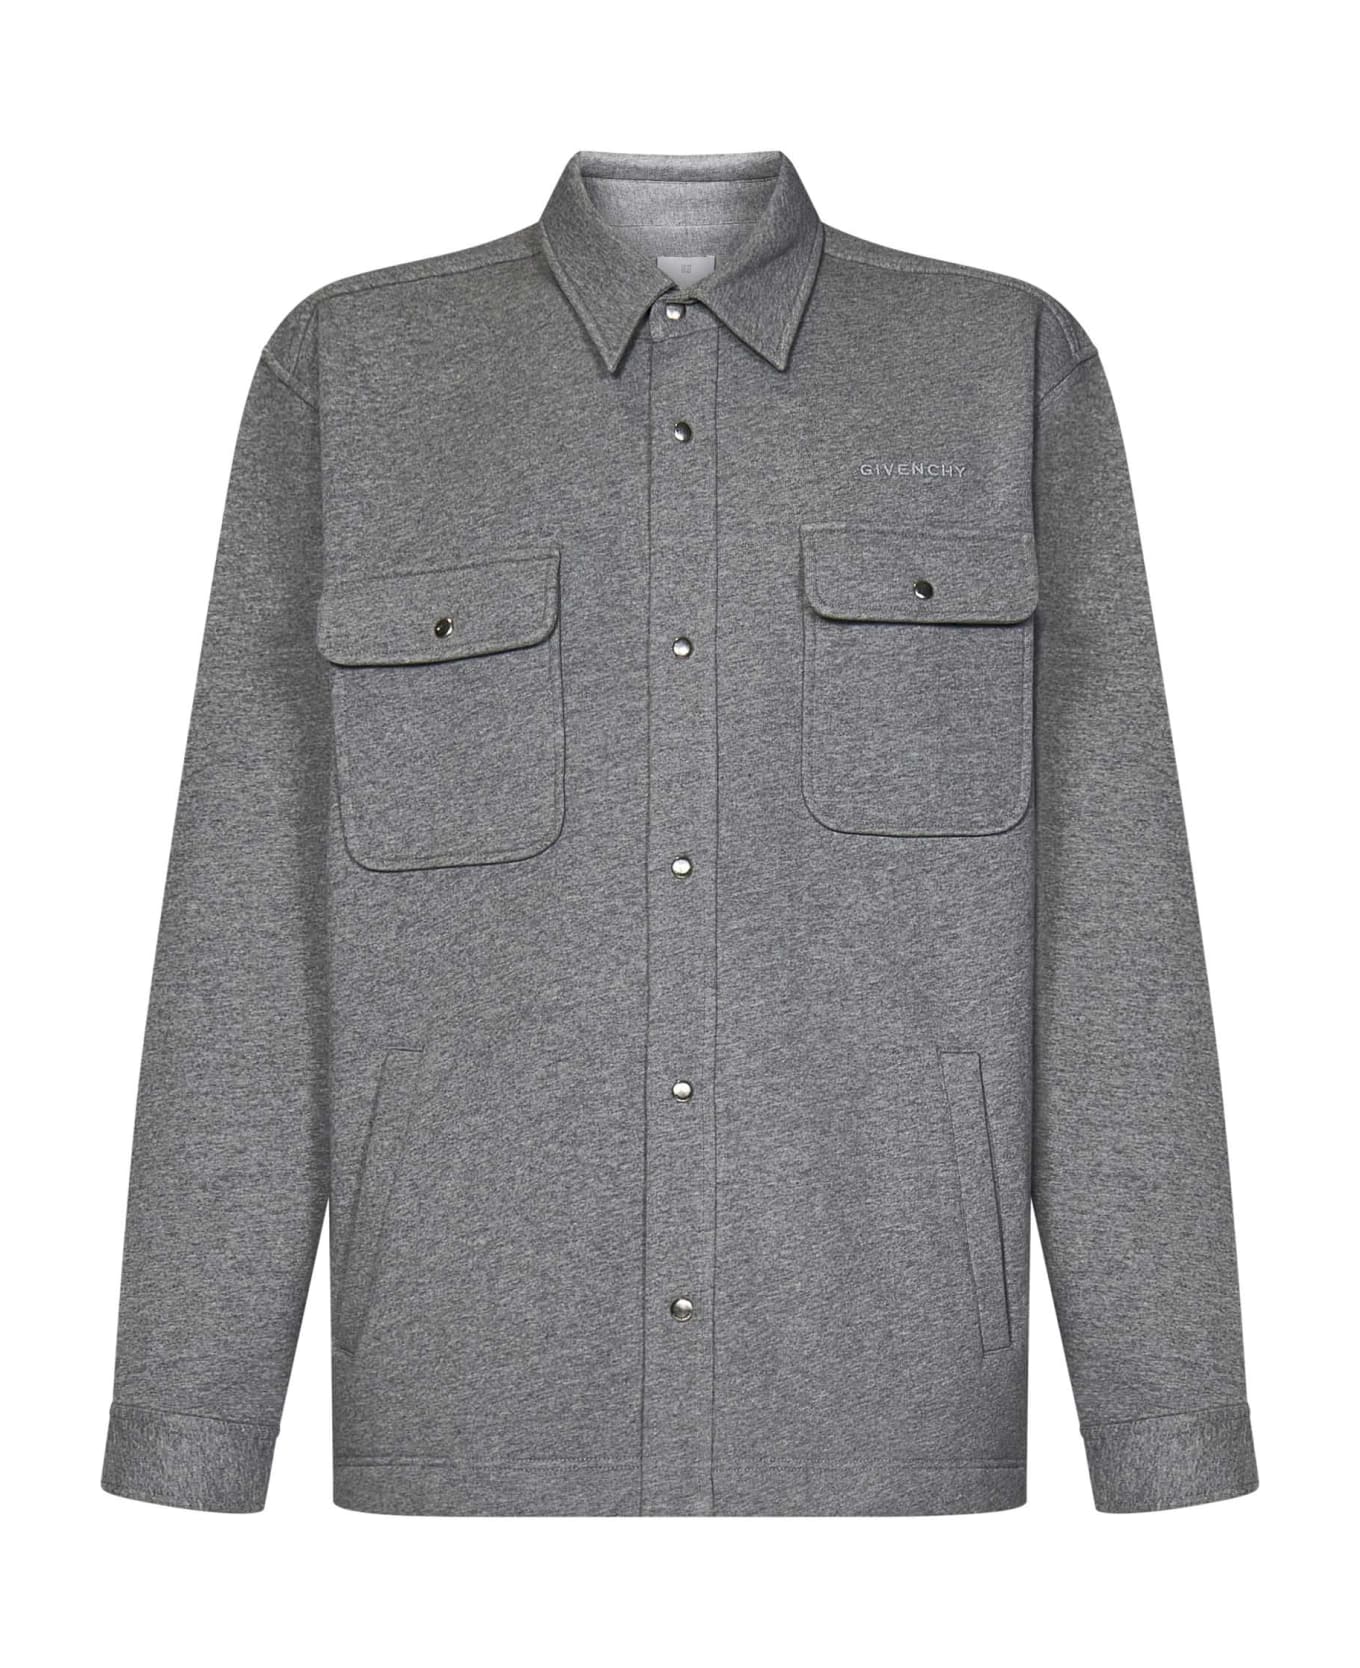 Givenchy Shirt - Grey シャツ